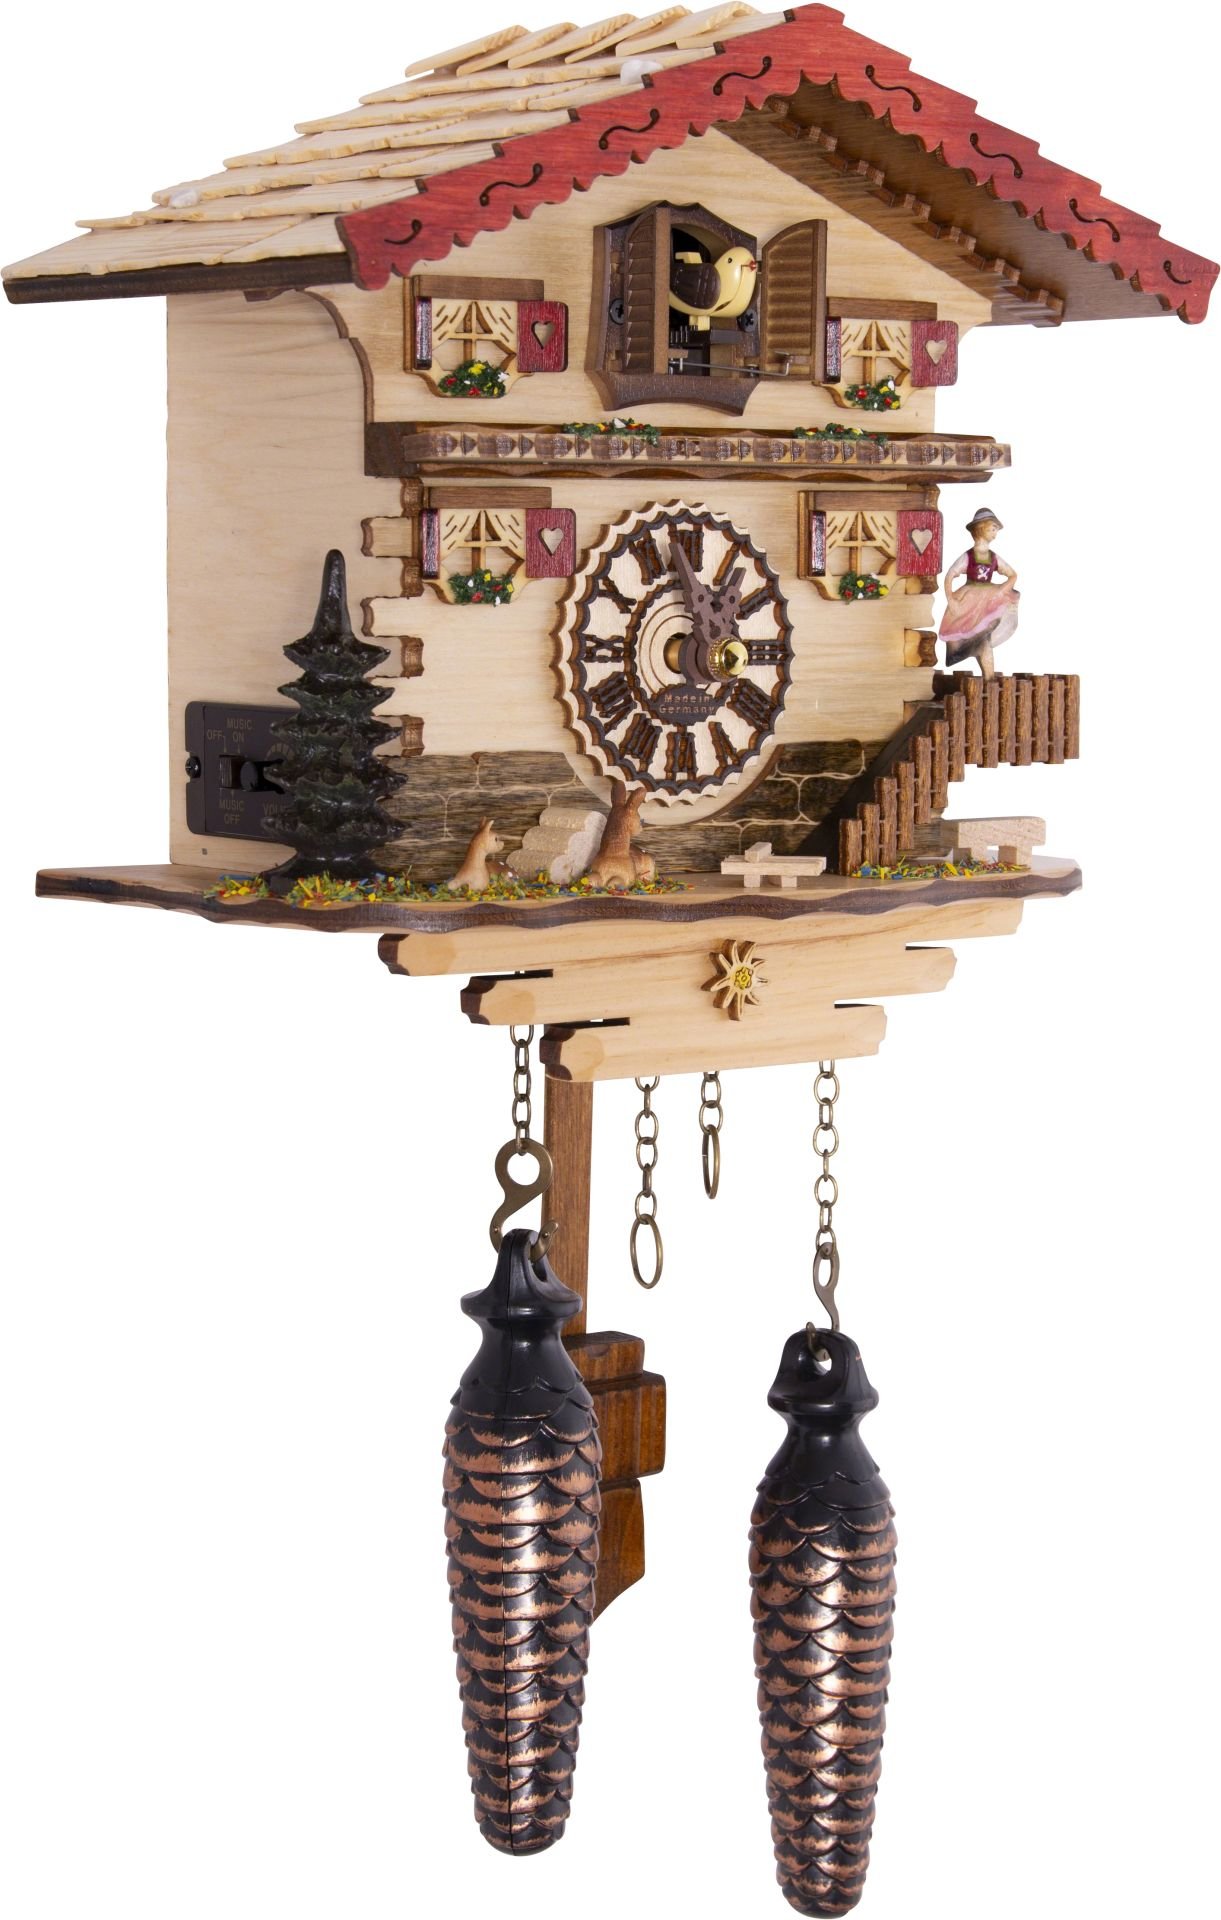 Kuckucksuhr Chalet-Stil Quarz-Uhrwerk 20cm von Trenkle Uhren